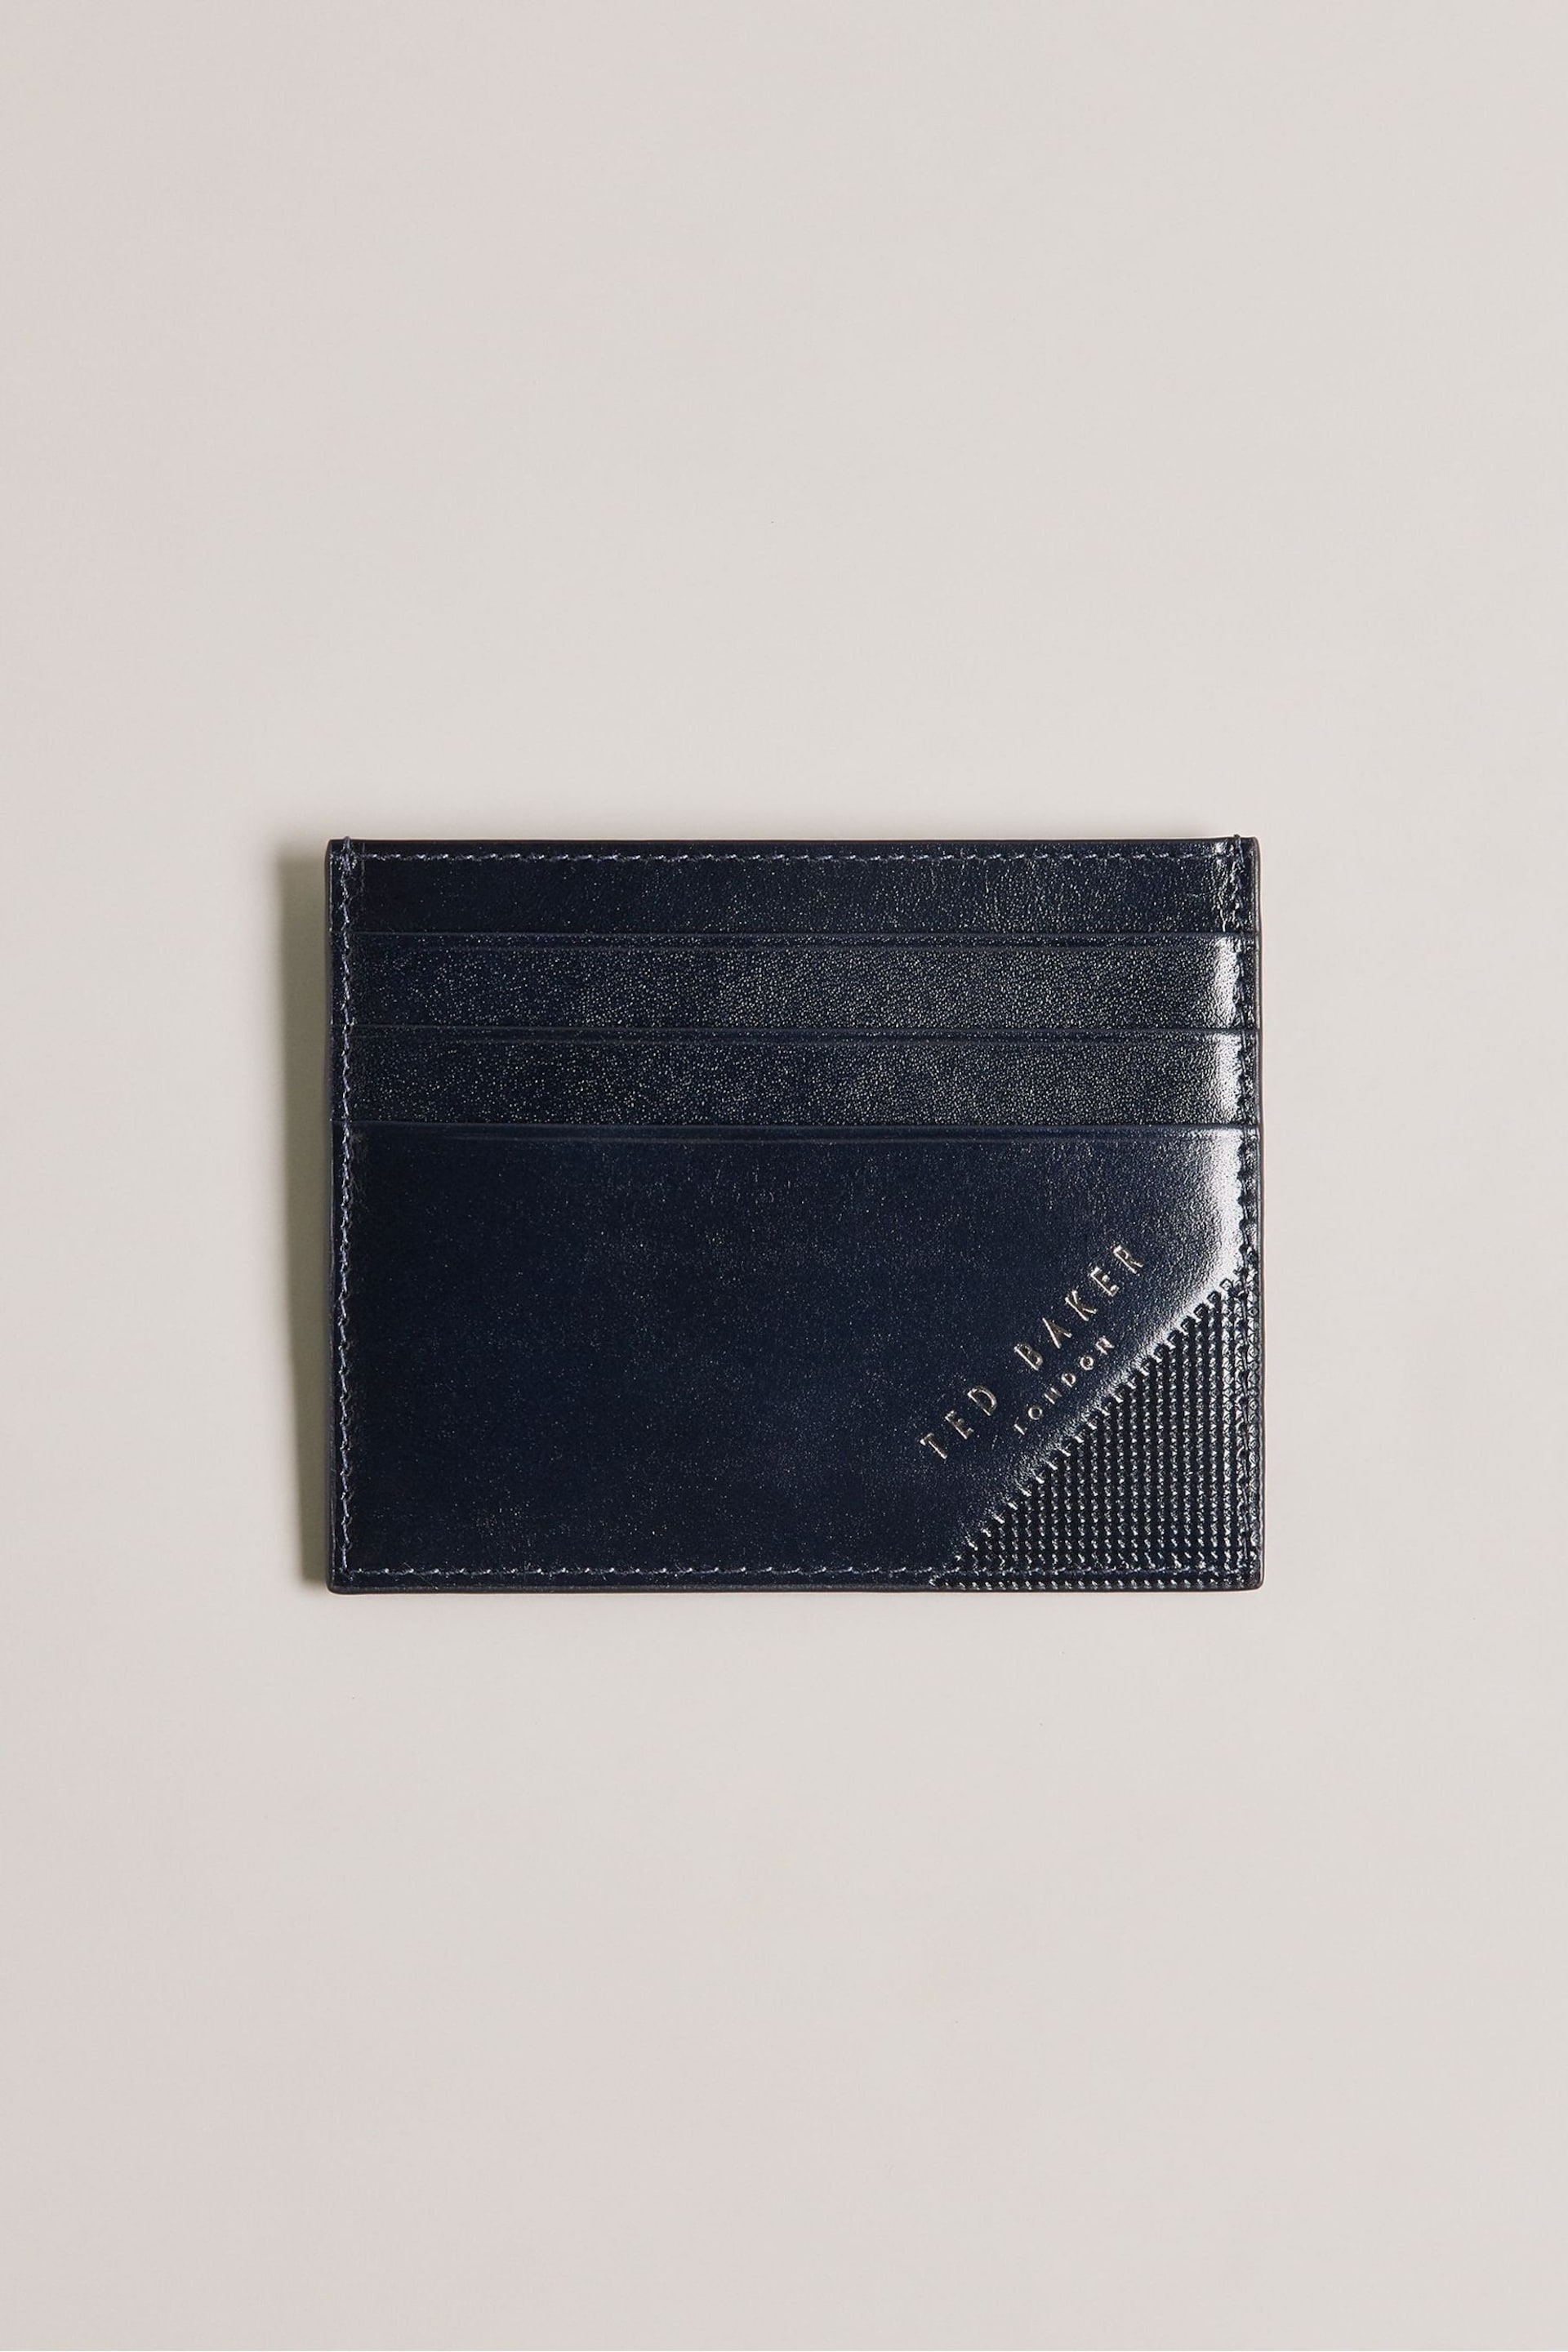 Ted Baker Blue Raffles Embossed Corner Leather Card Holder - Image 1 of 3